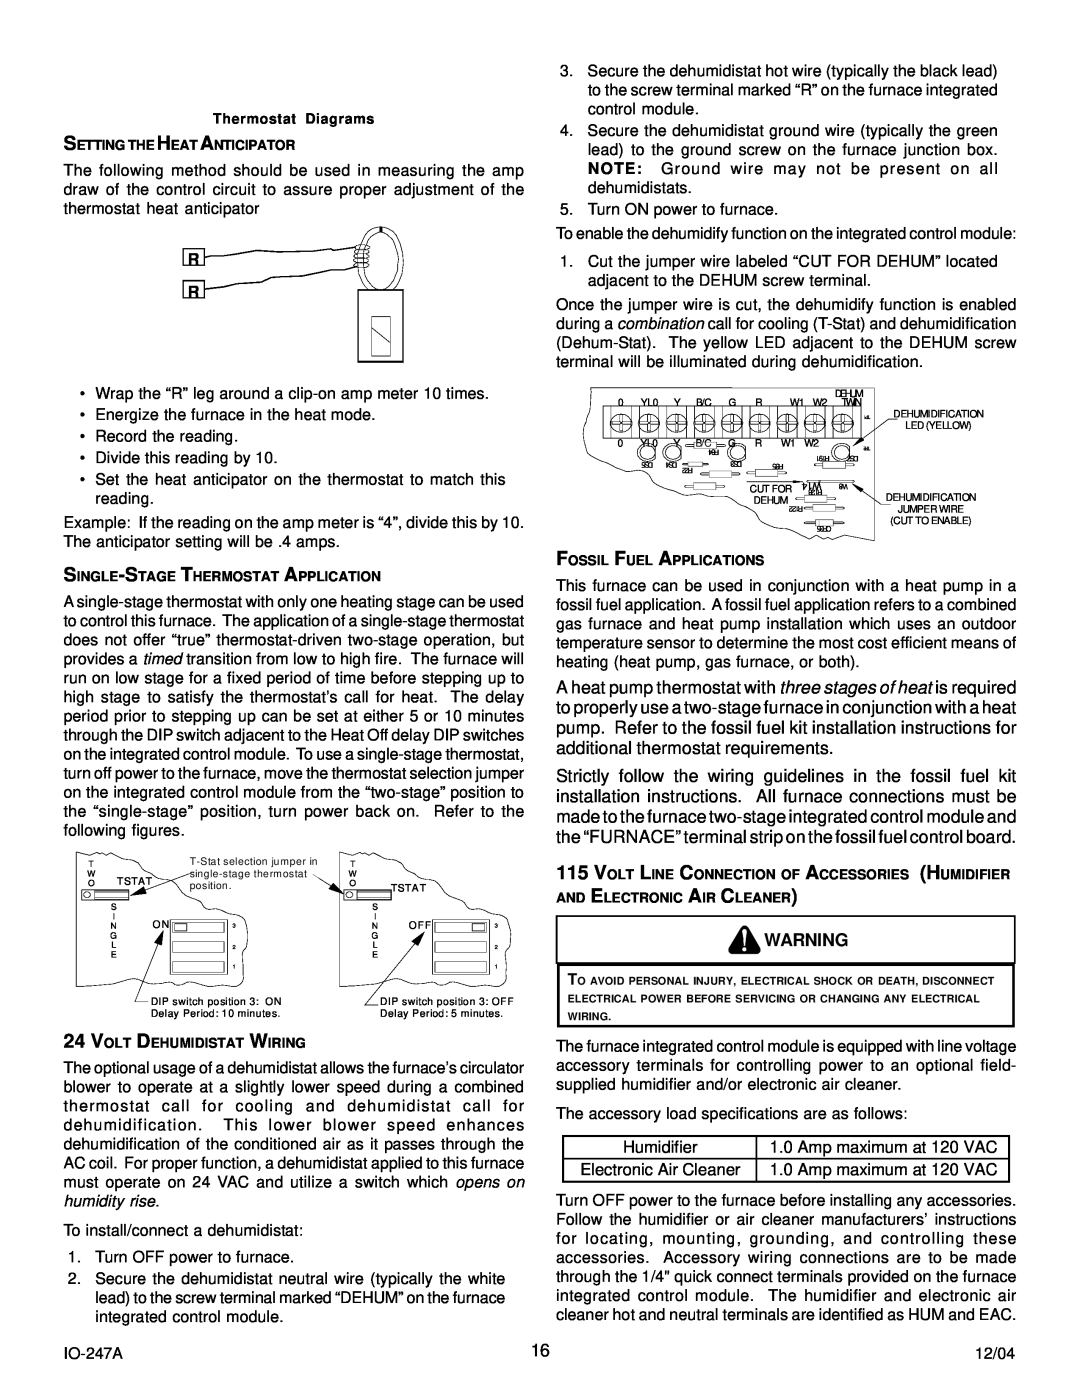 Goodman Mfg AMV8 instruction manual Humidifier, Amp maximum at 120 VAC, Thermostat Diagrams 